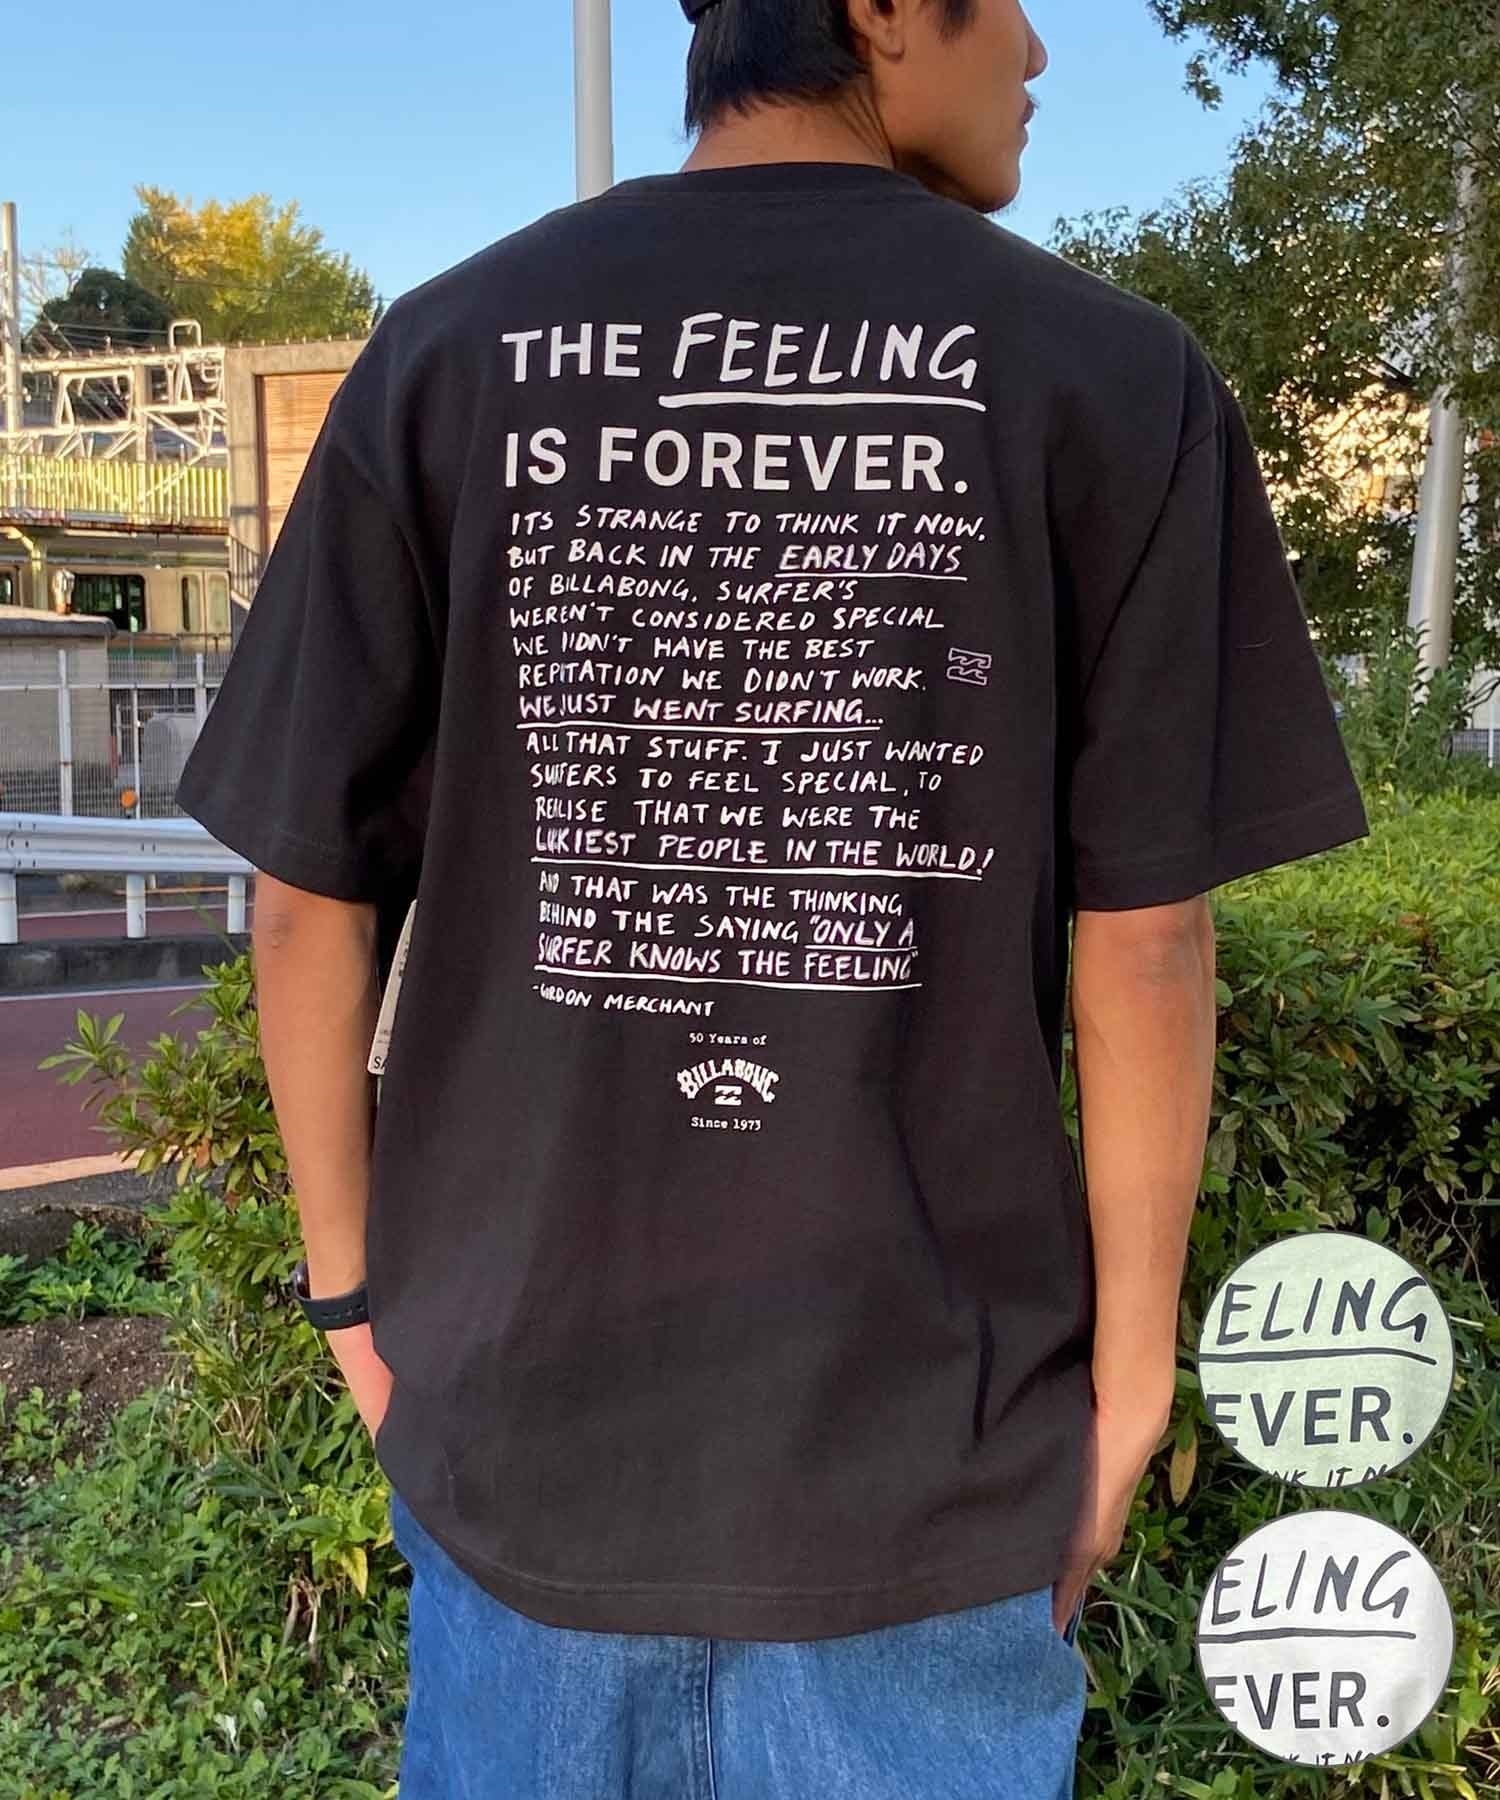 【クーポン対象】BILLABONG ビラボン FEELING IS FOREVER メンズ Tシャツ 半袖 バックプリント BE011-210(OFW-M)